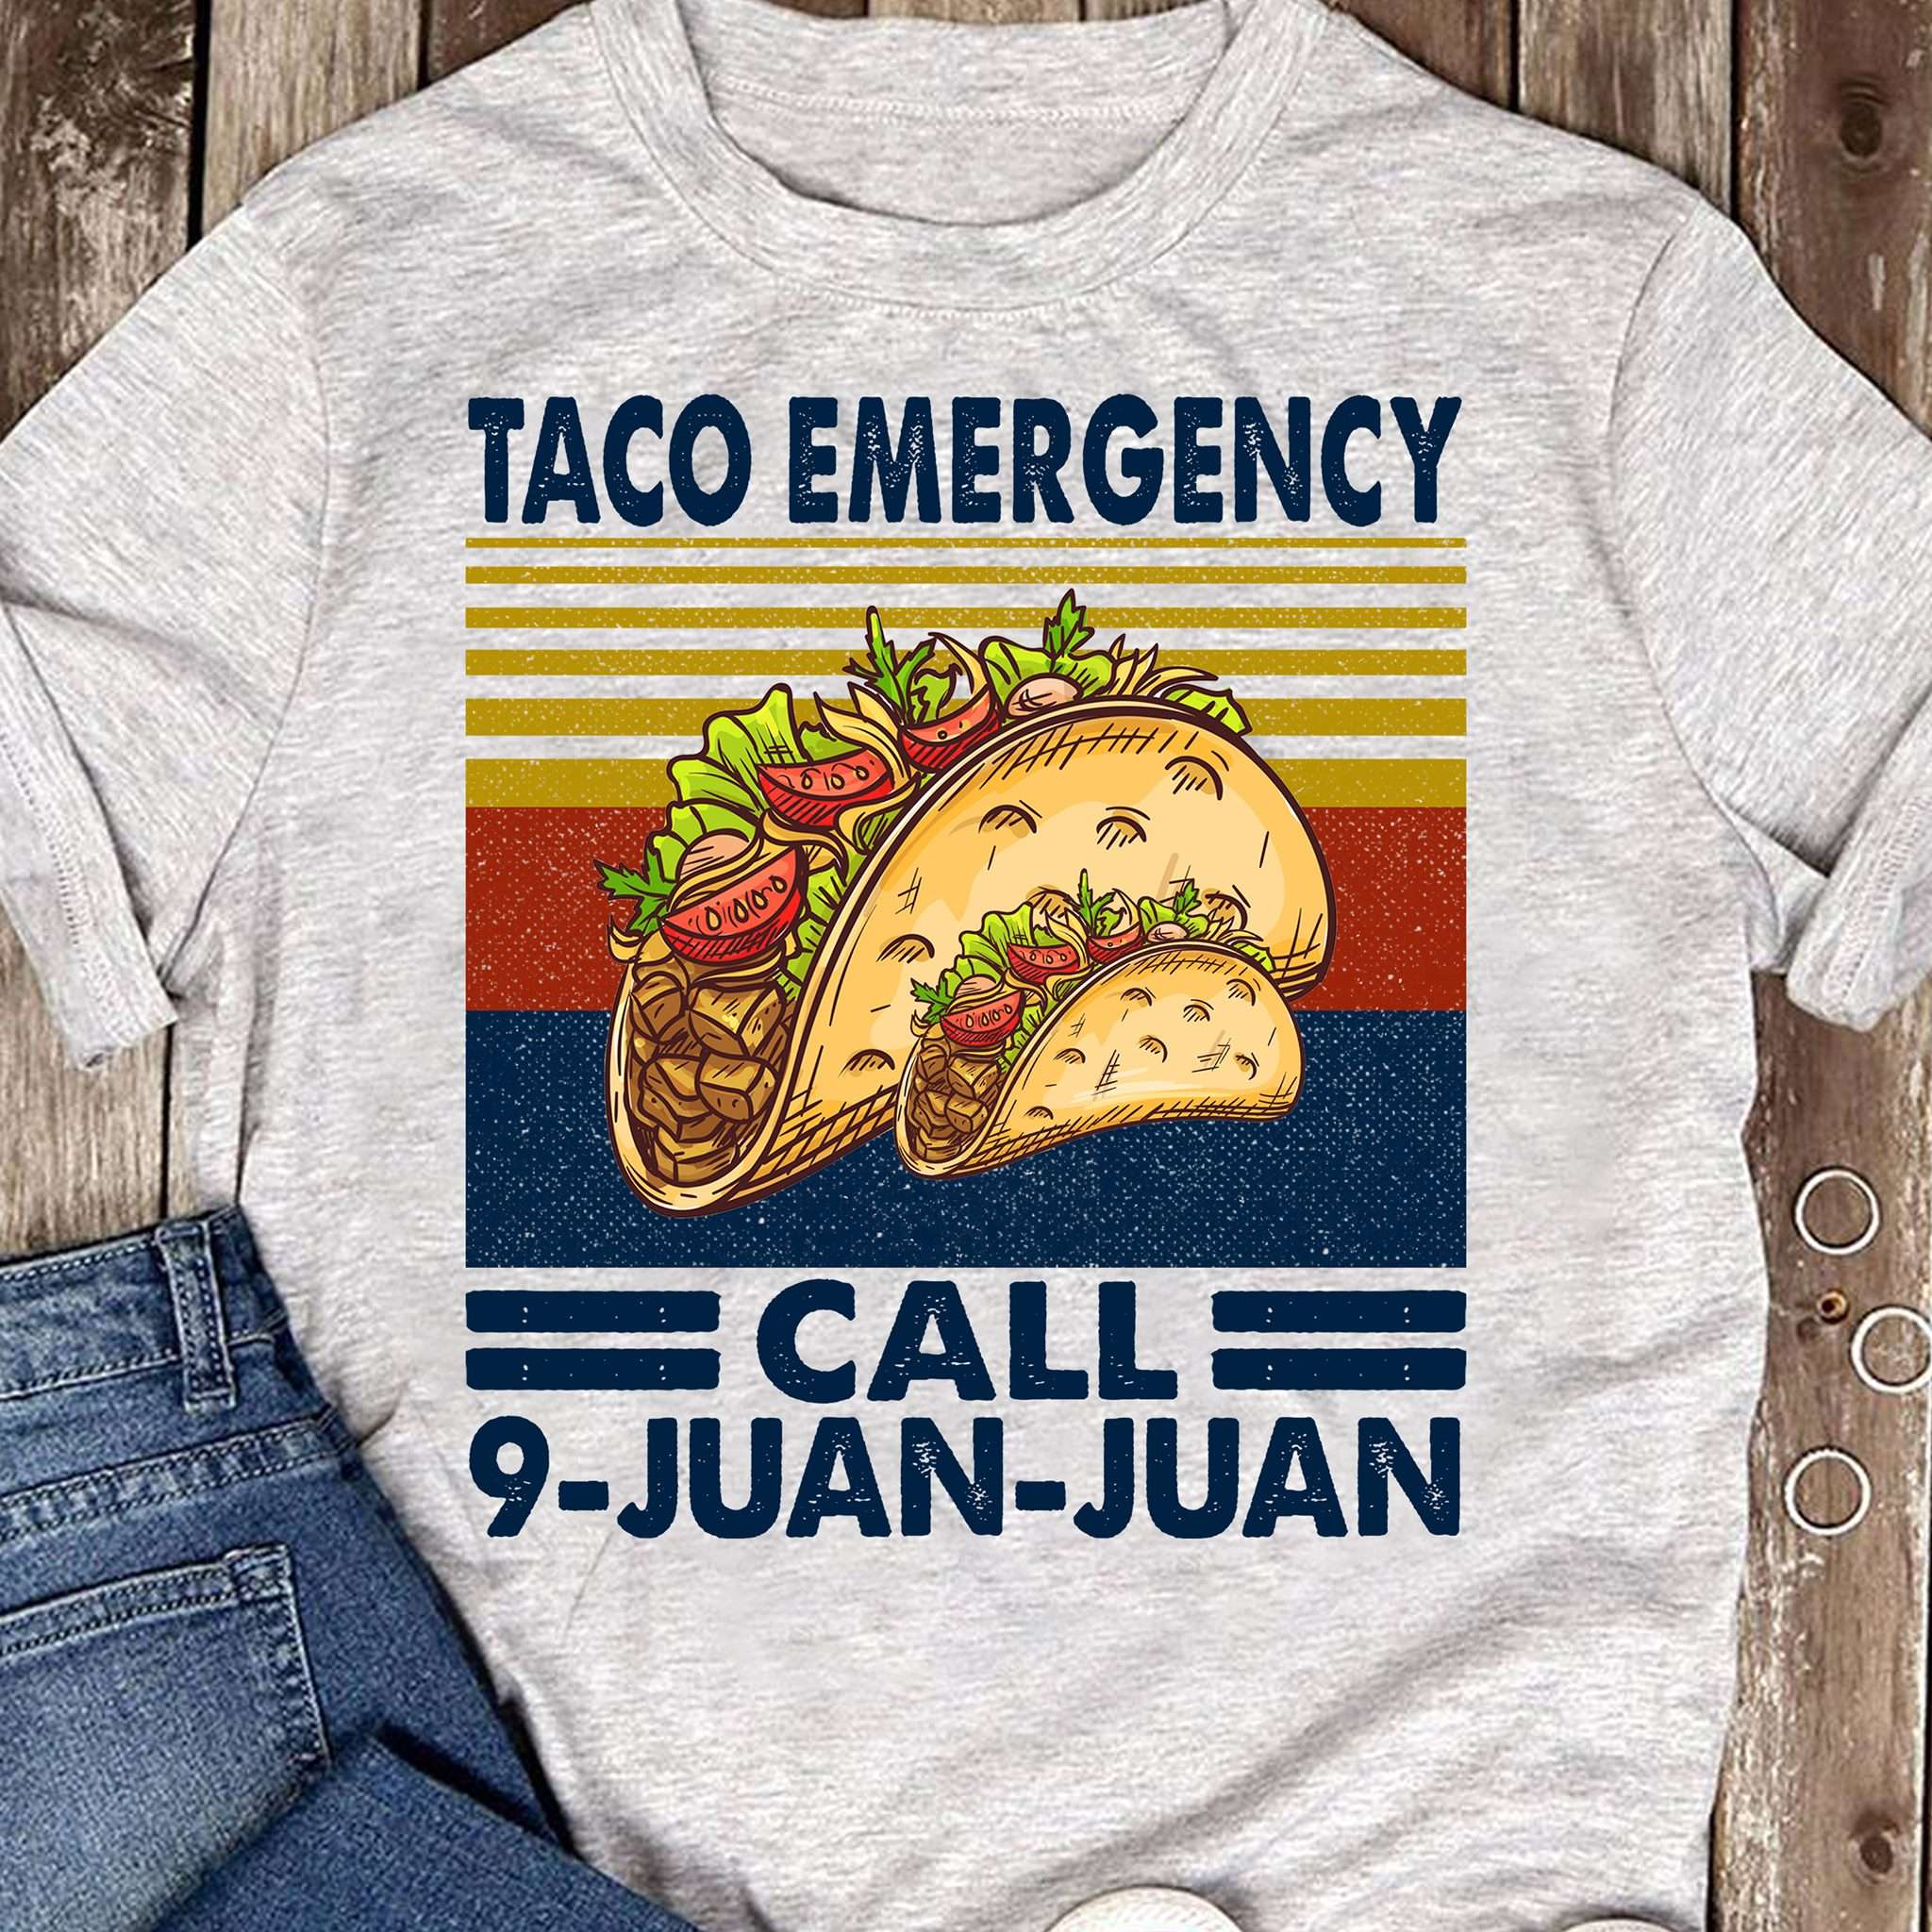 Taco emergency - Call 9-juan-juan, Taco Mexican Food